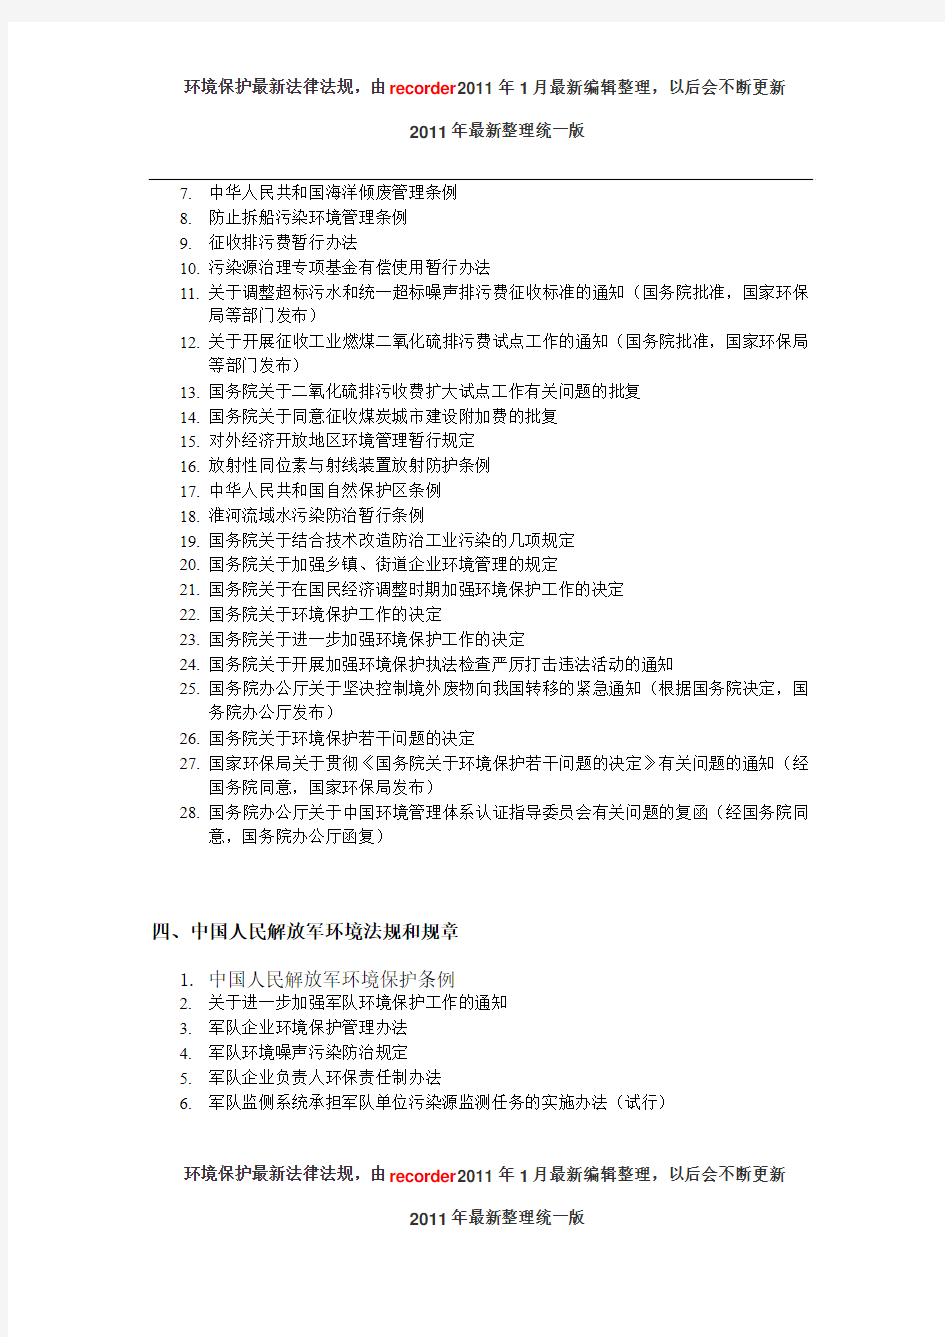 中国环境法规目录全-2011年最新整理统一版